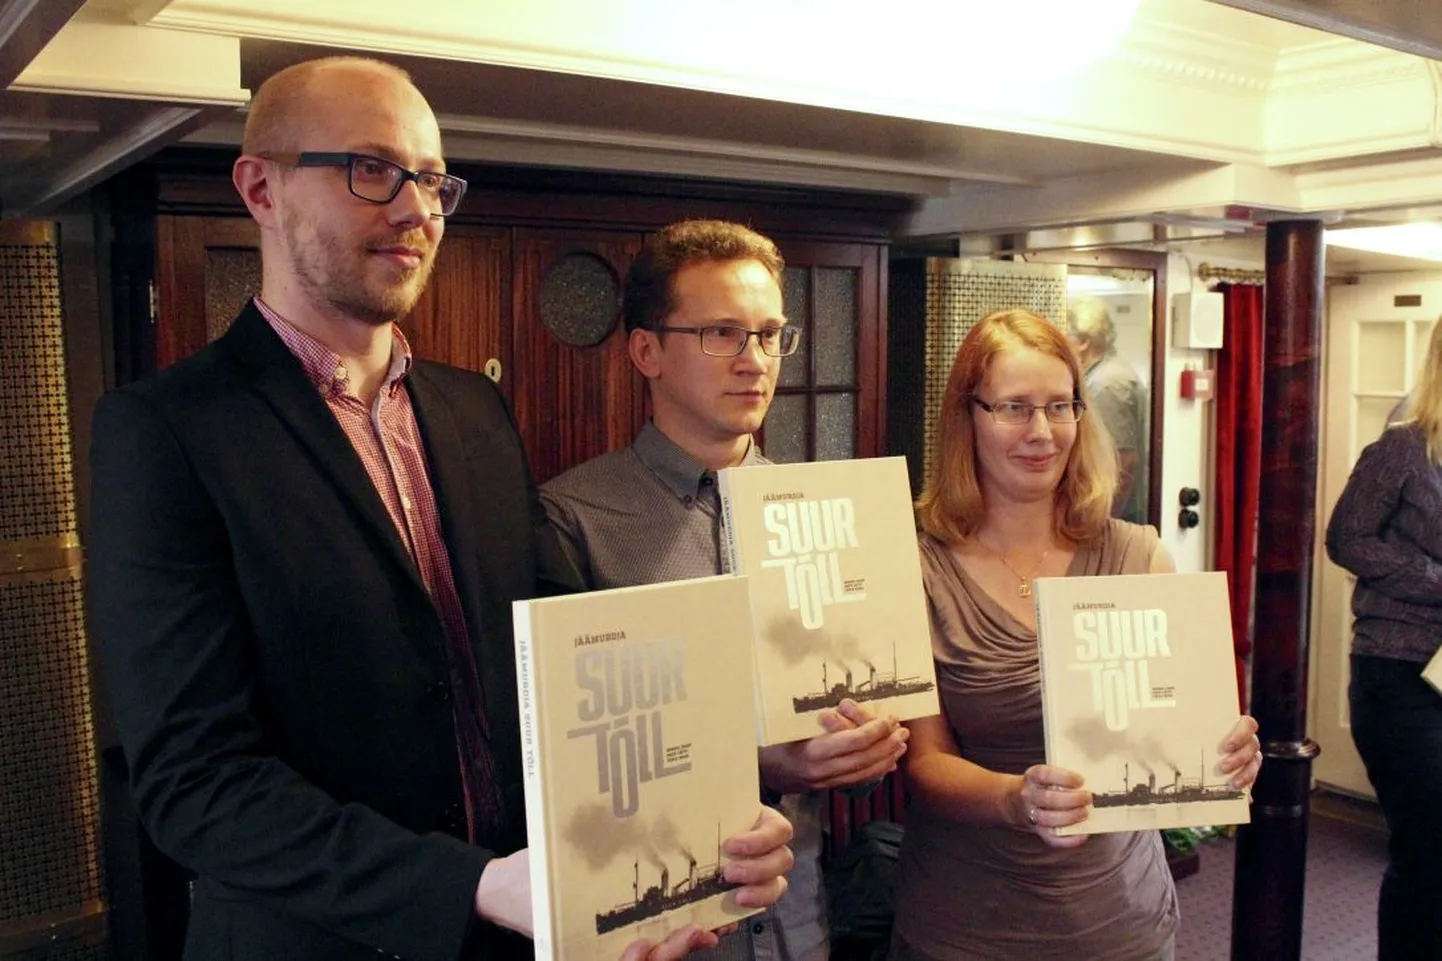 Kolm raamatu autorit vasakult paremale: Mihkel Karu, Priit Lätti, Teele Saar